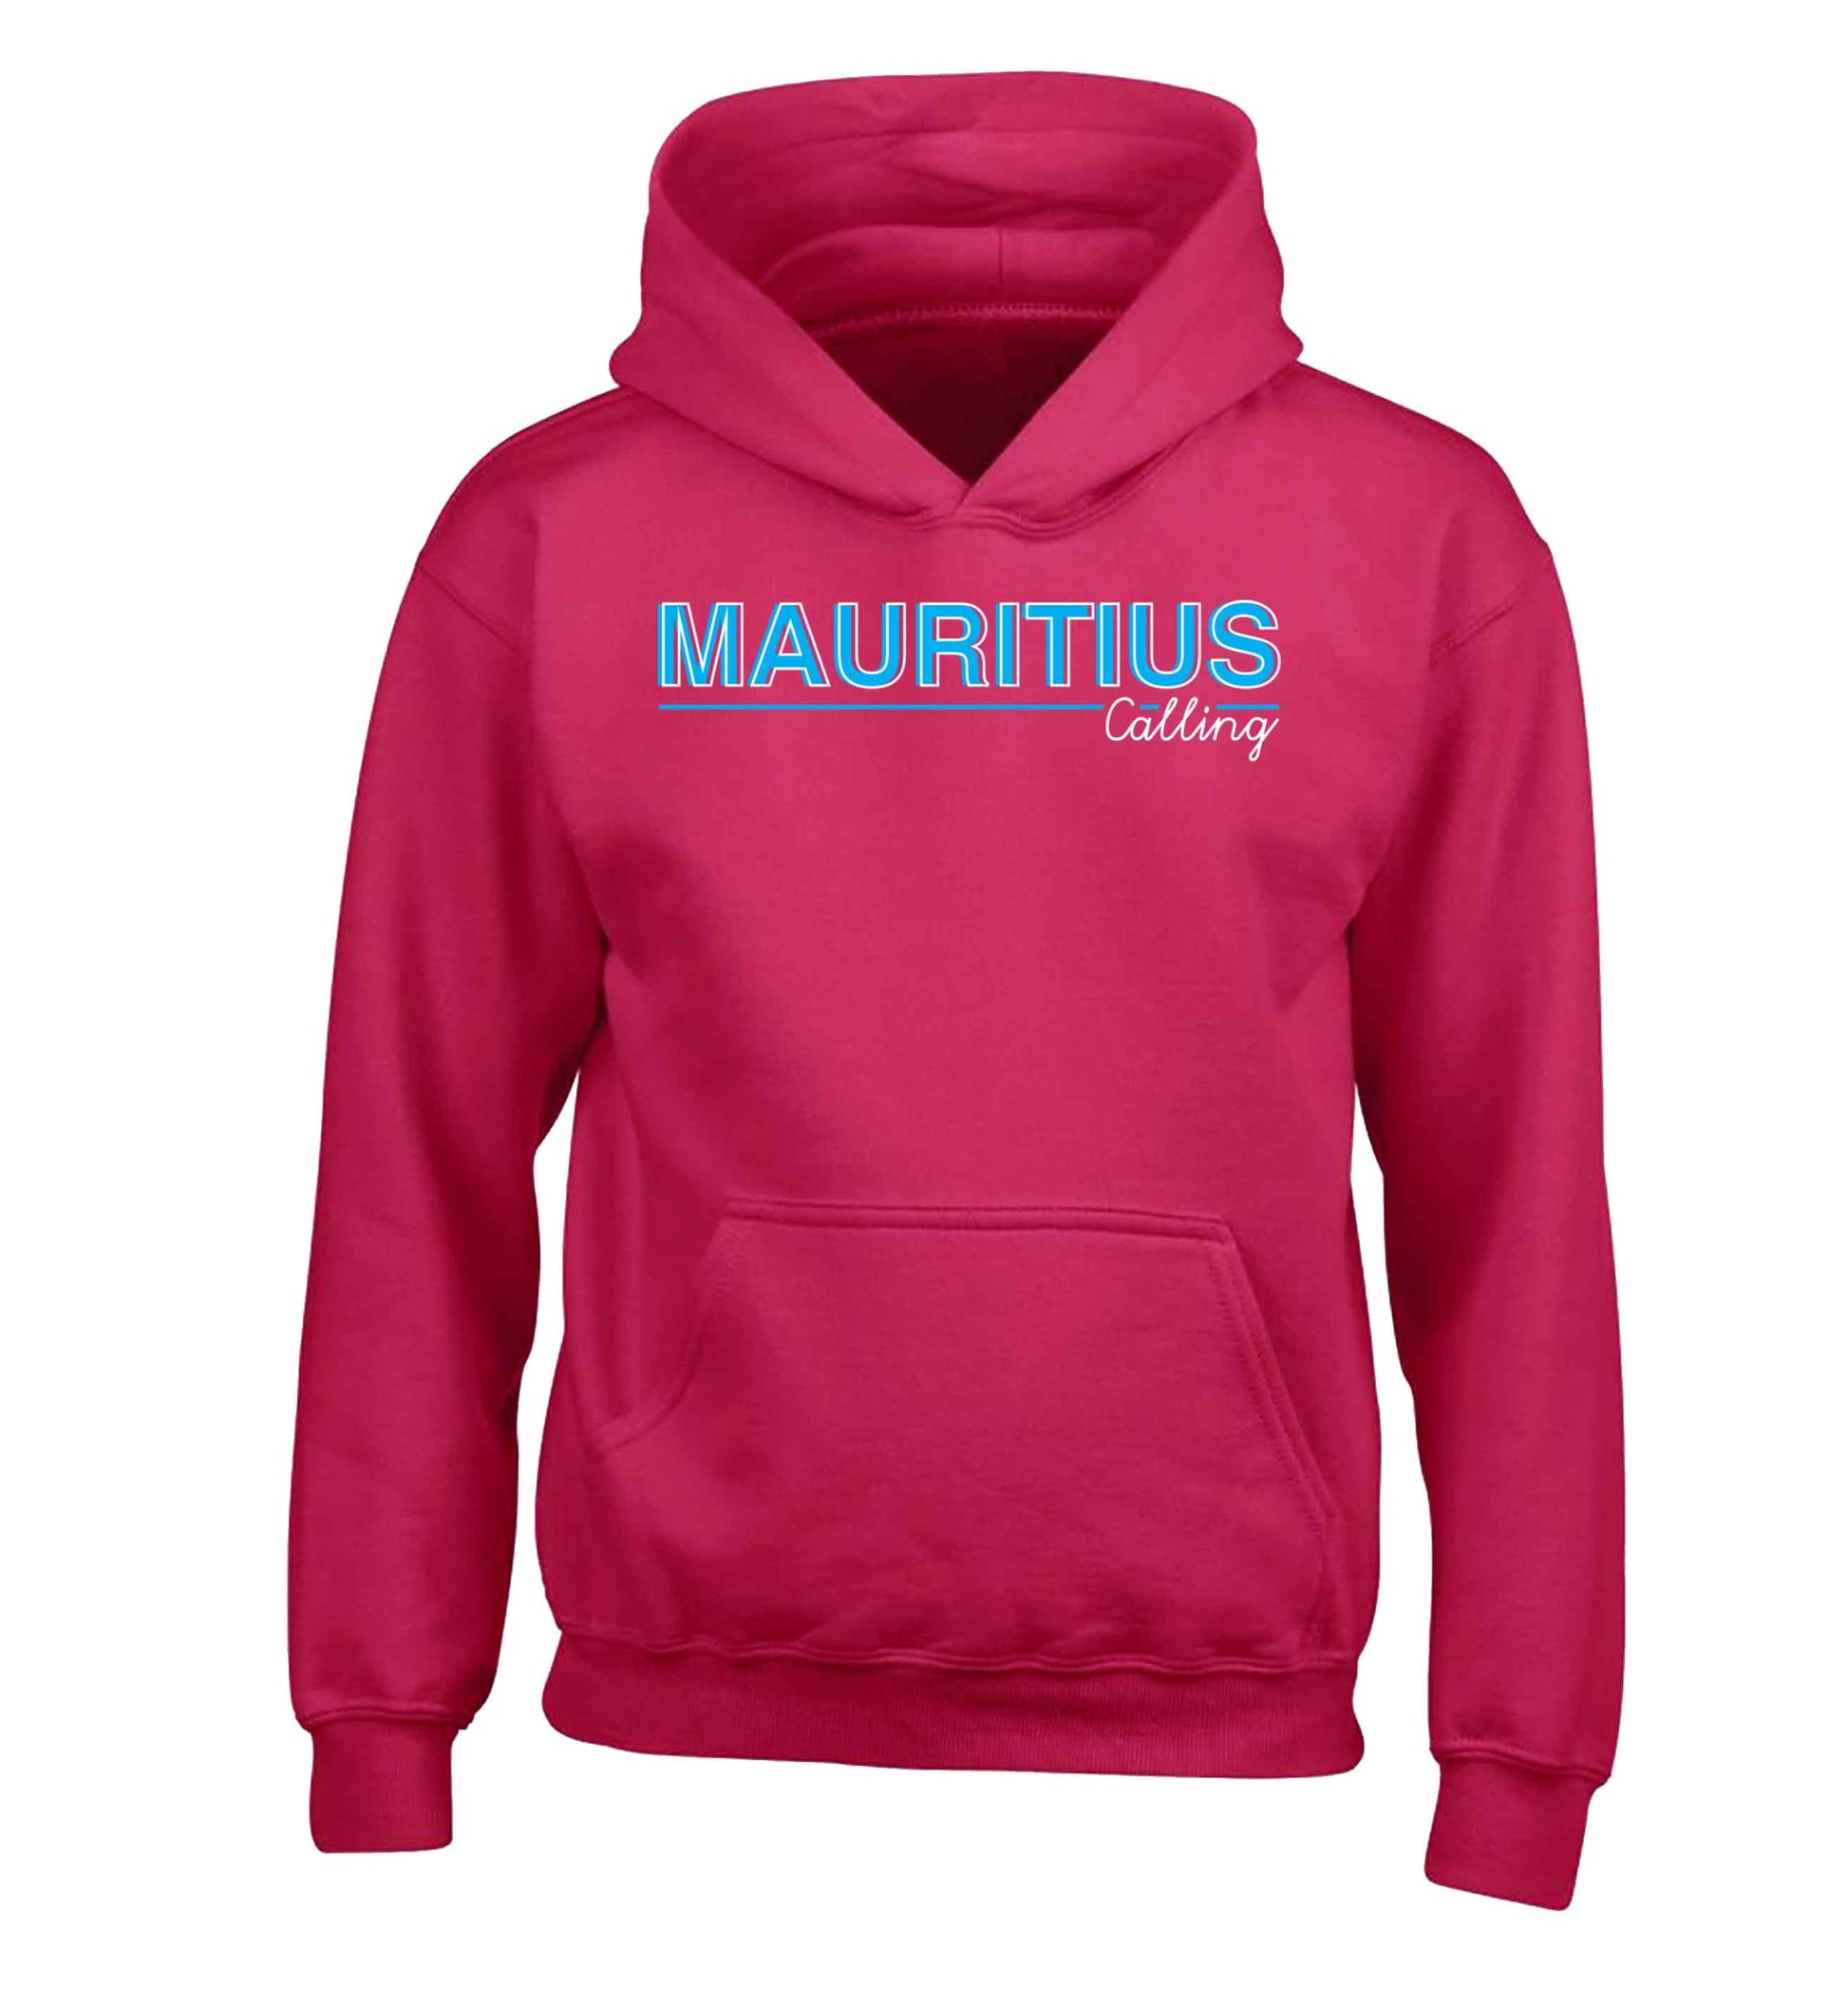 Mauritius calling children's pink hoodie 12-13 Years